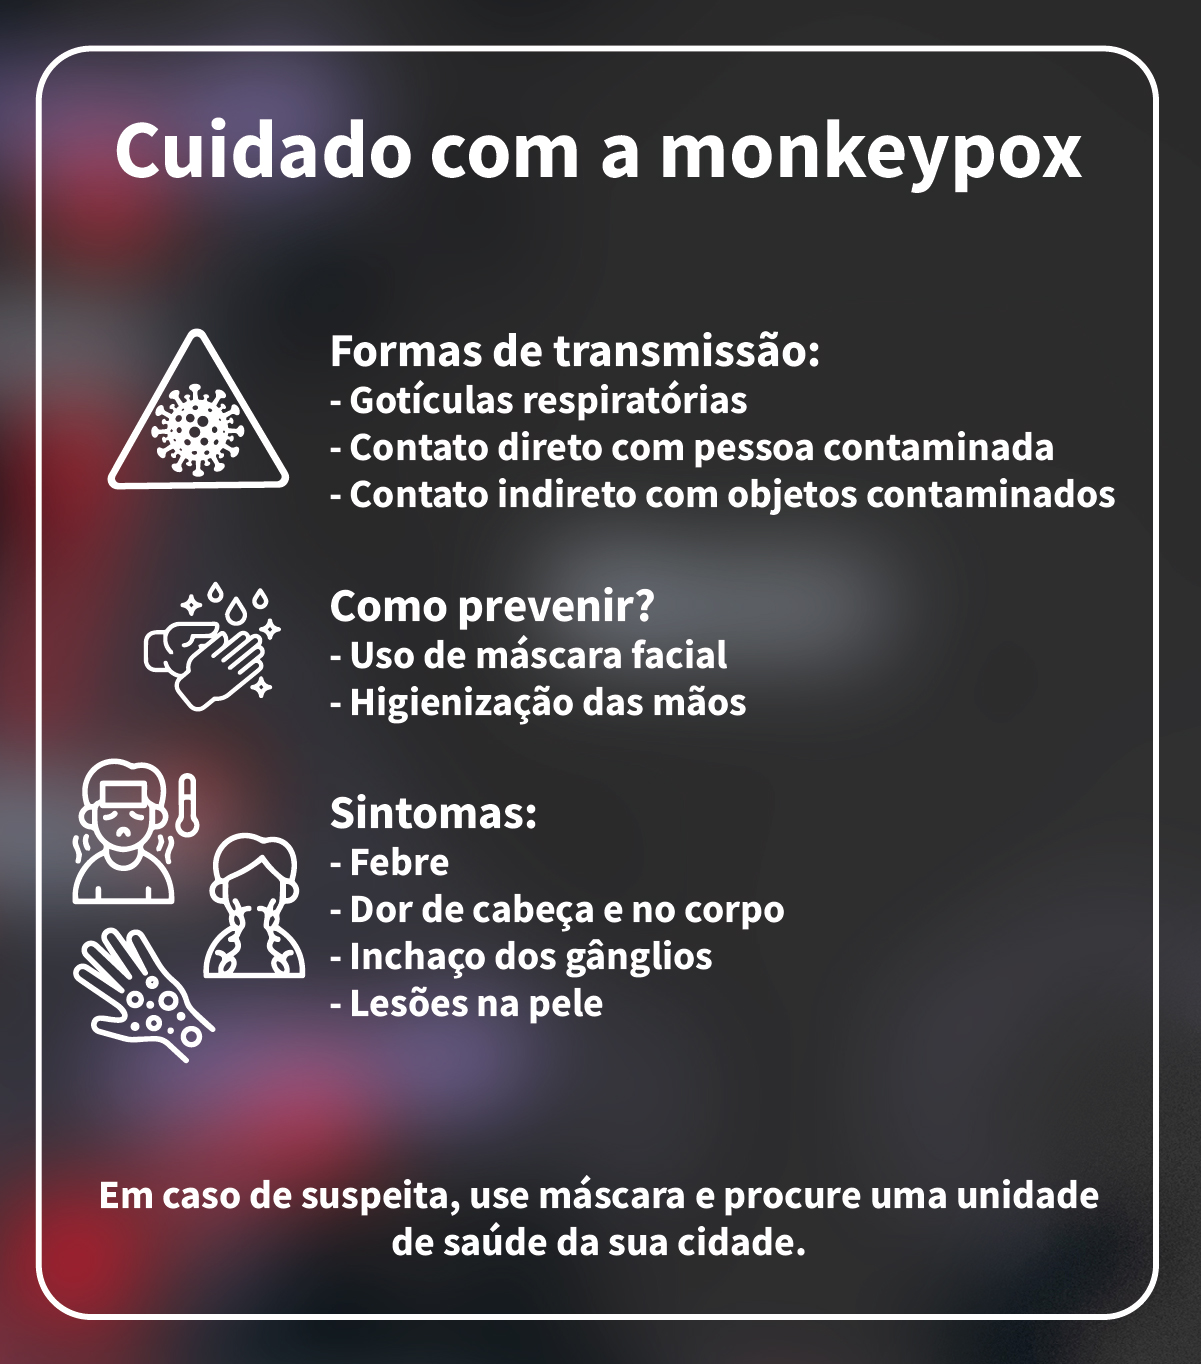 Infográfico com cuidados com a monkeypox